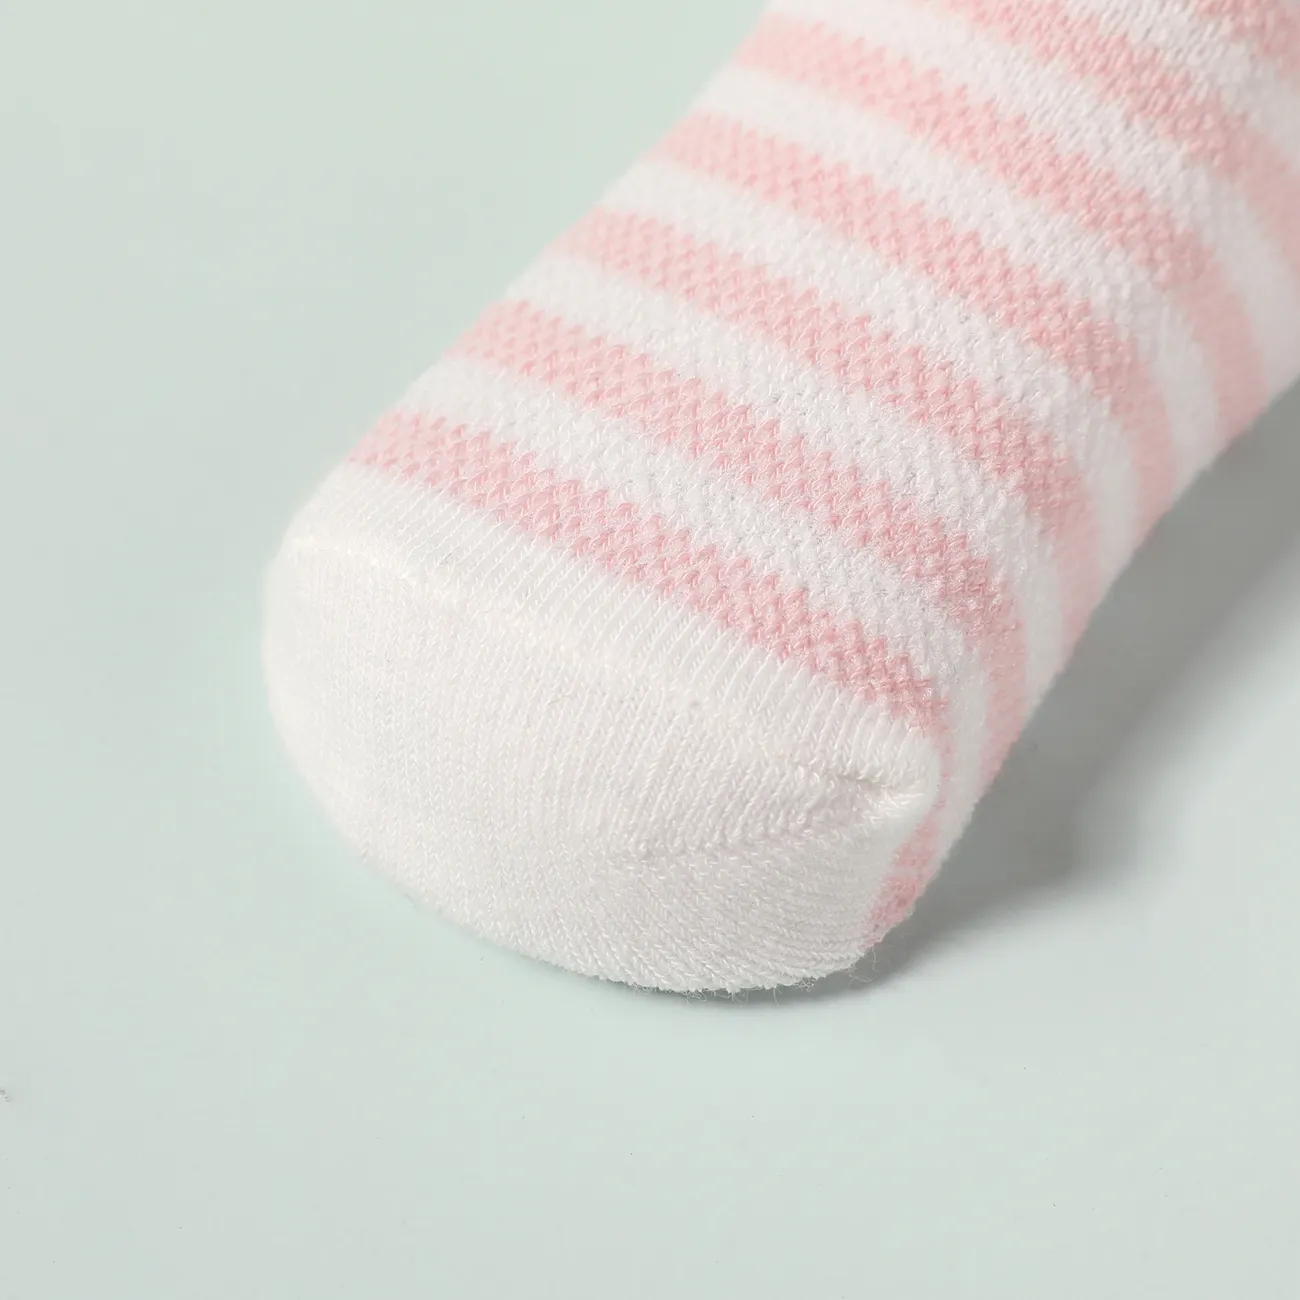 5 件裝嬰兒 / 蹣跚學步的條紋圓點卡通動物圖案襪子 粉色 big image 1